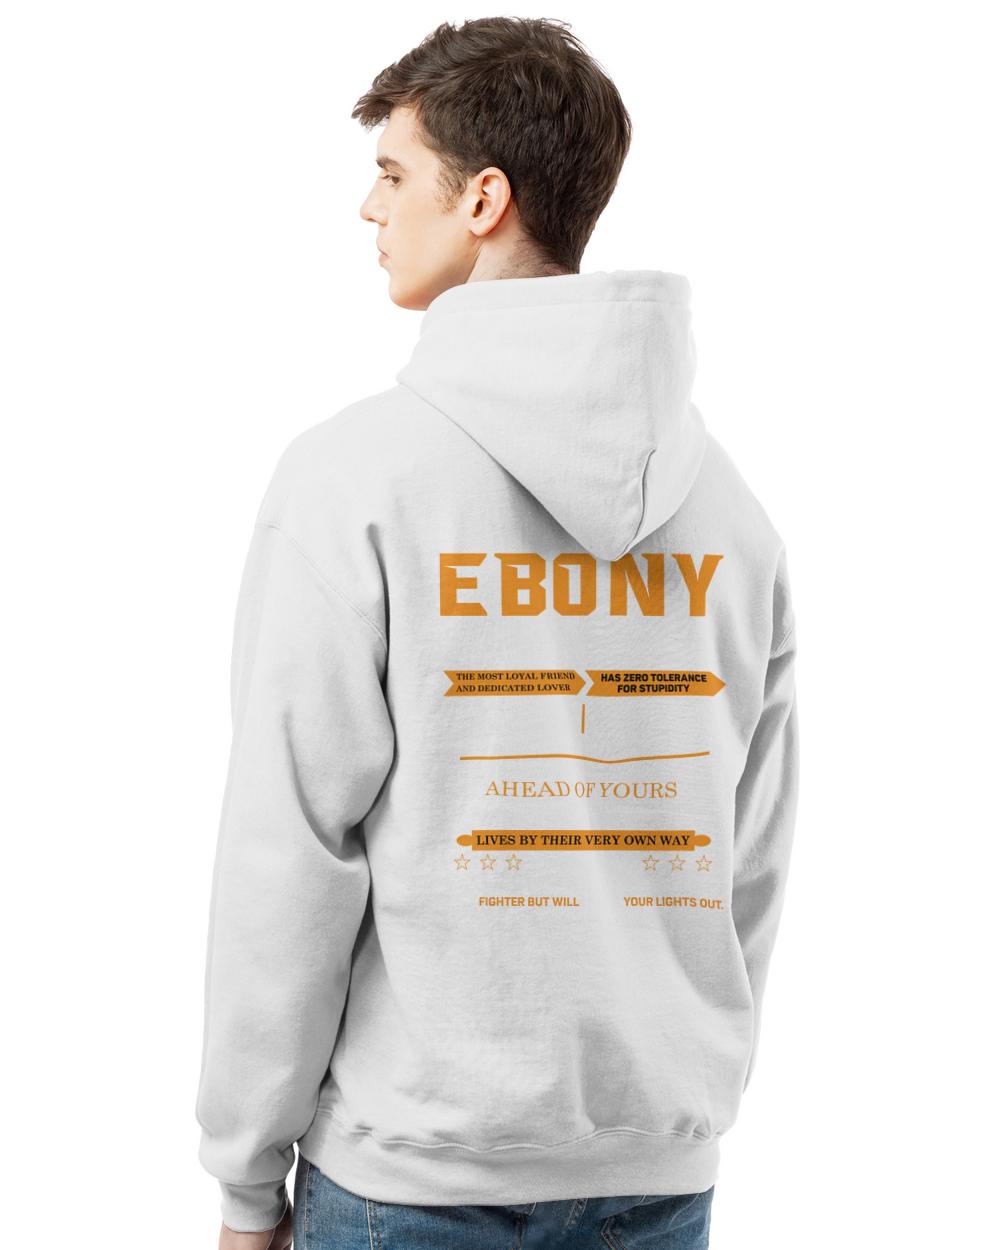 EBONY-13K-N1-01